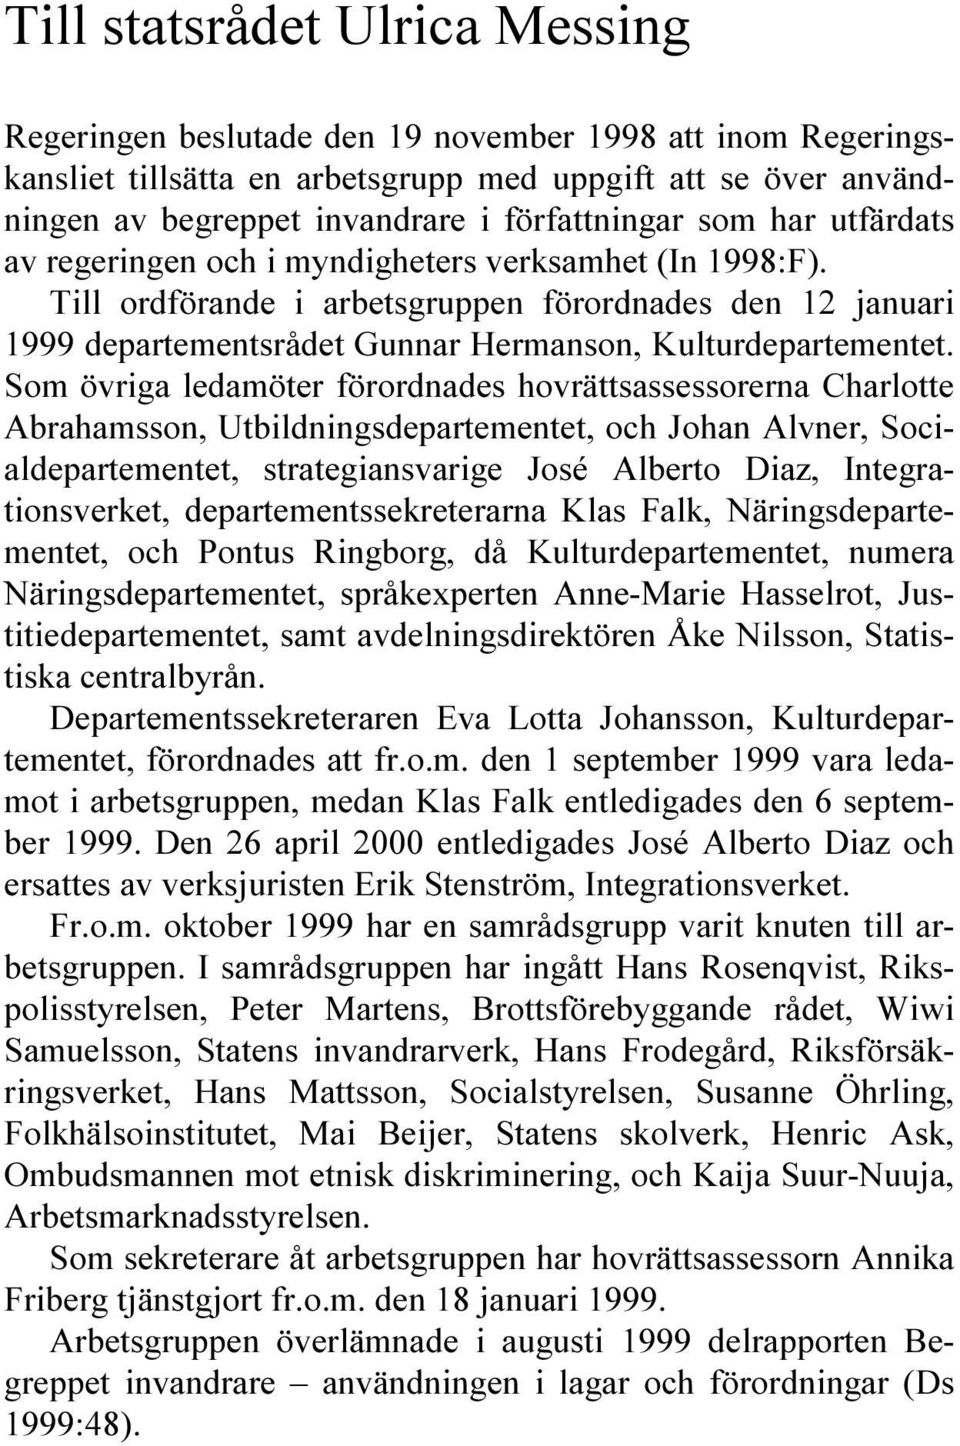 Till ordförande i arbetsgruppen förordnades den 12 januari 1999 departementsrådet Gunnar Hermanson, Kulturdepartementet.